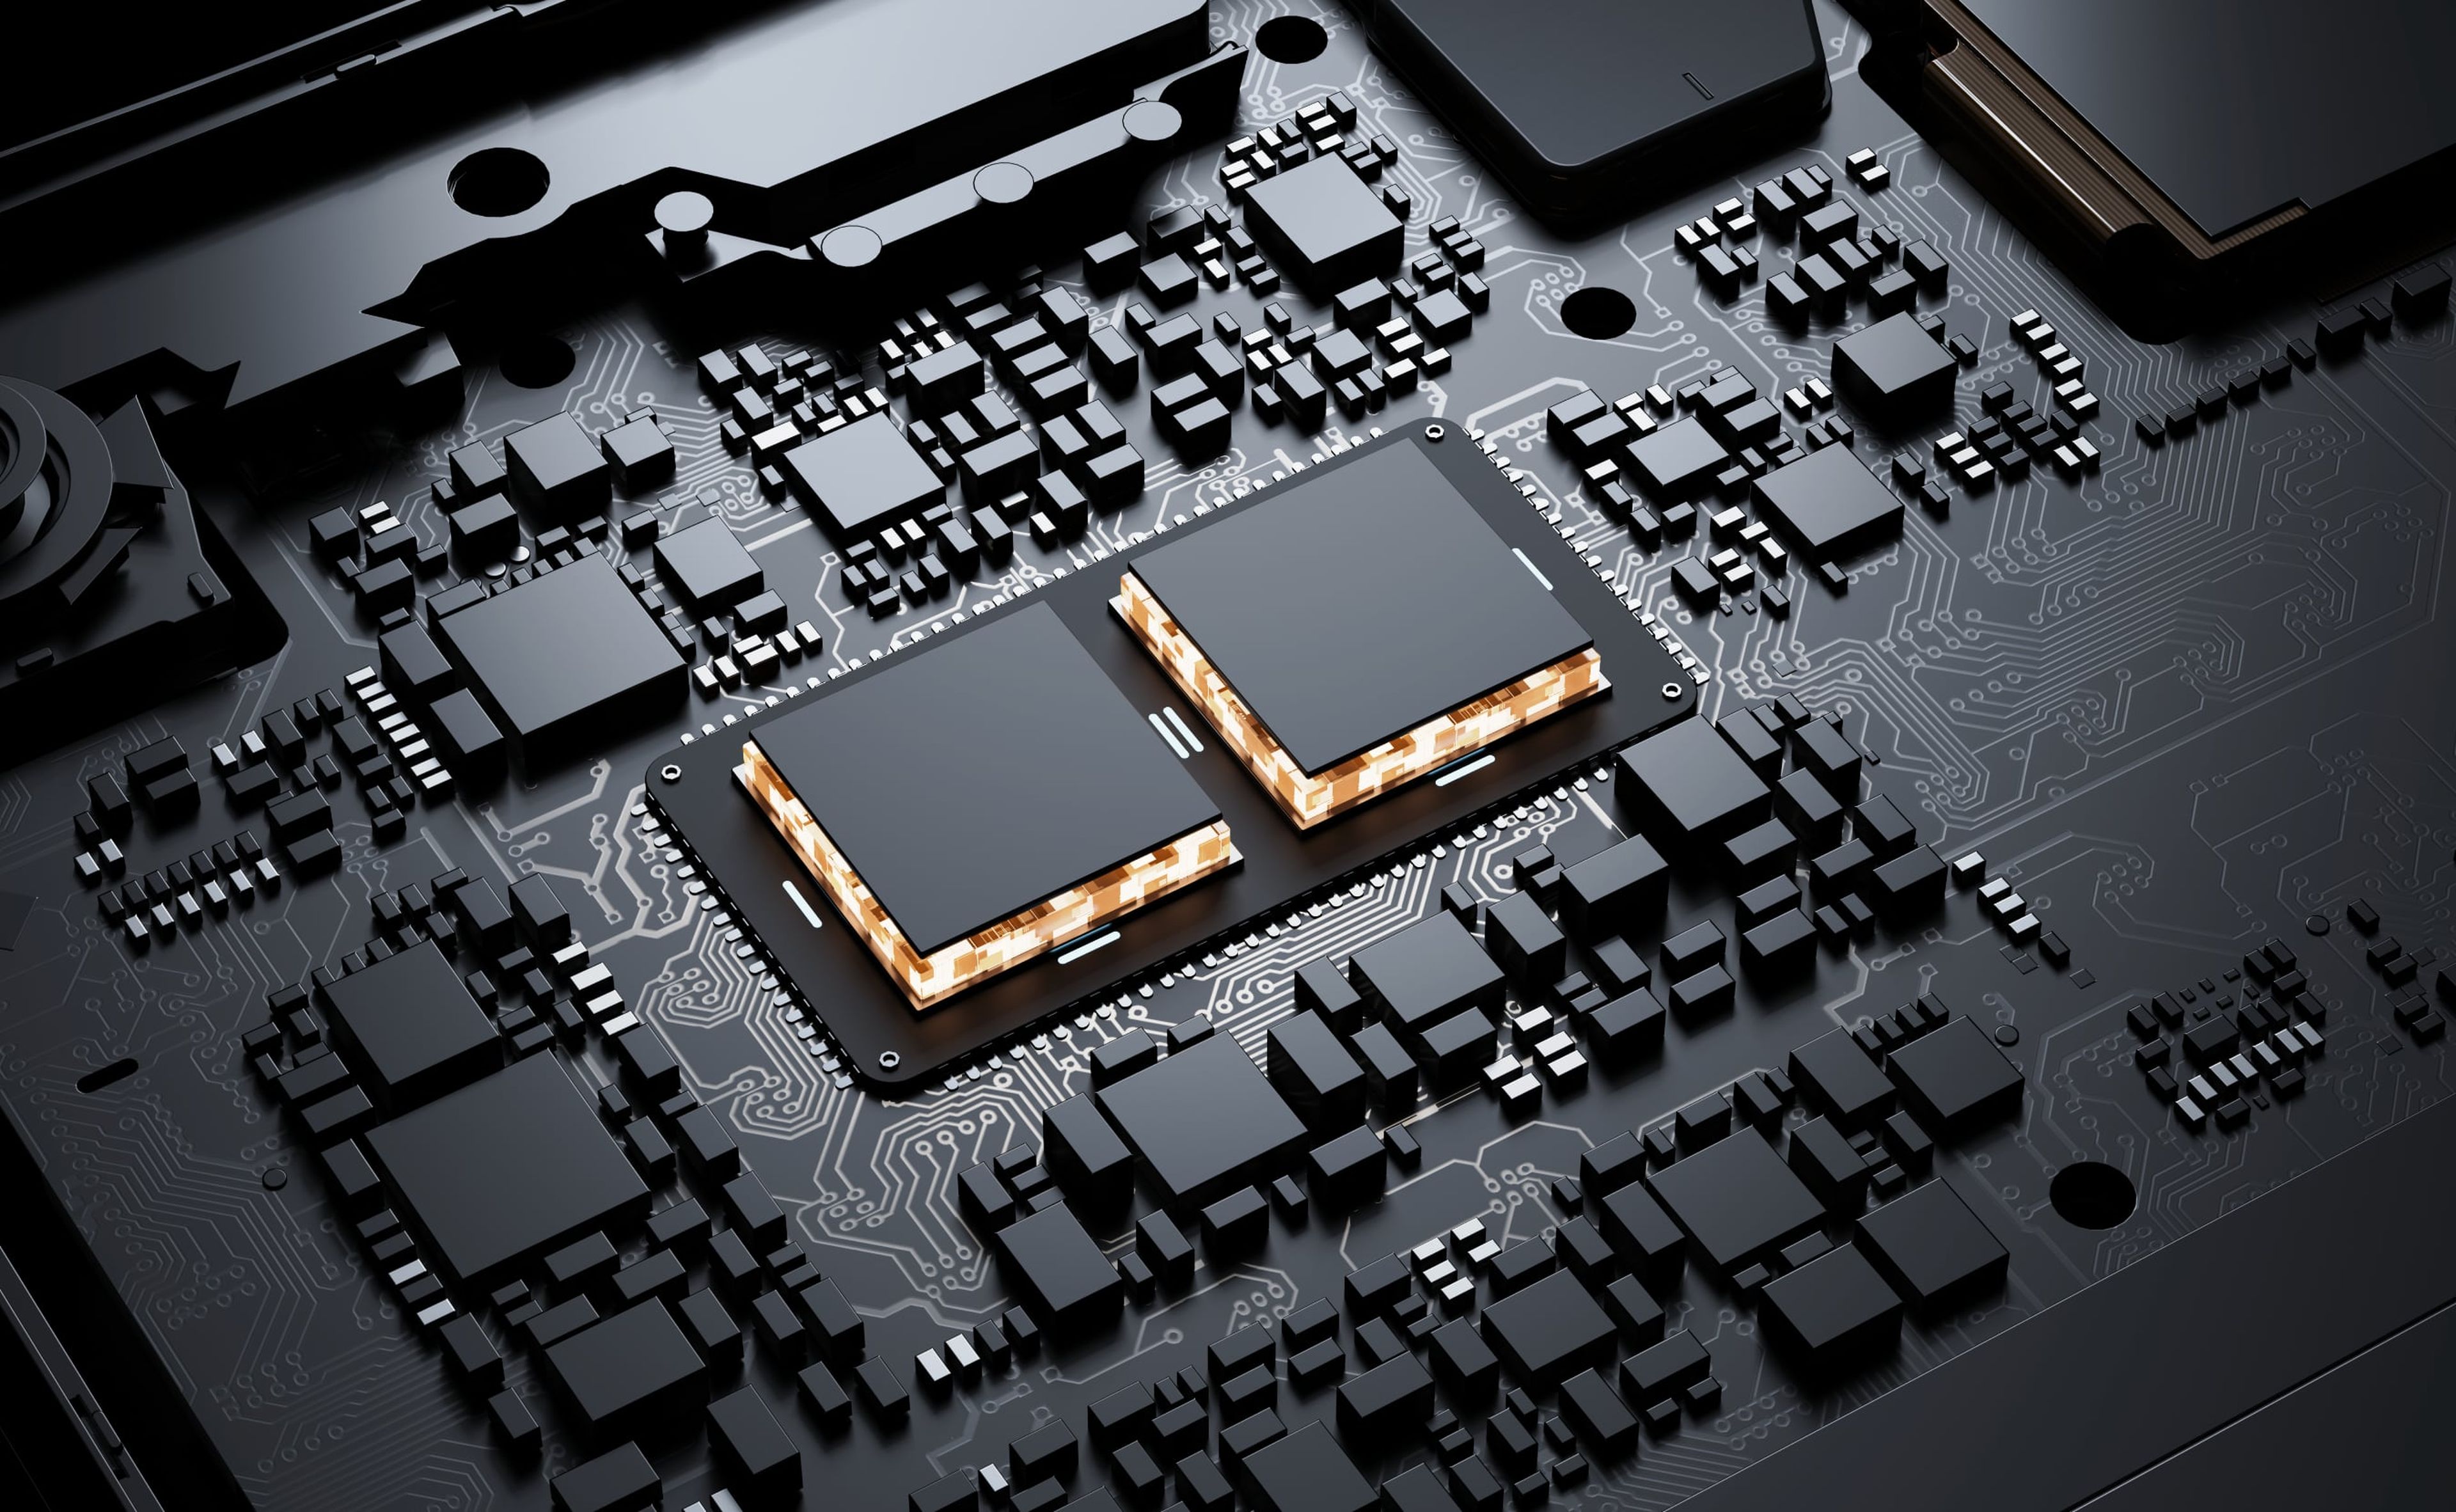 Su procesador, un Qualcomm Snapdragon 888, reduce el consumo de energía hasta en un 30%